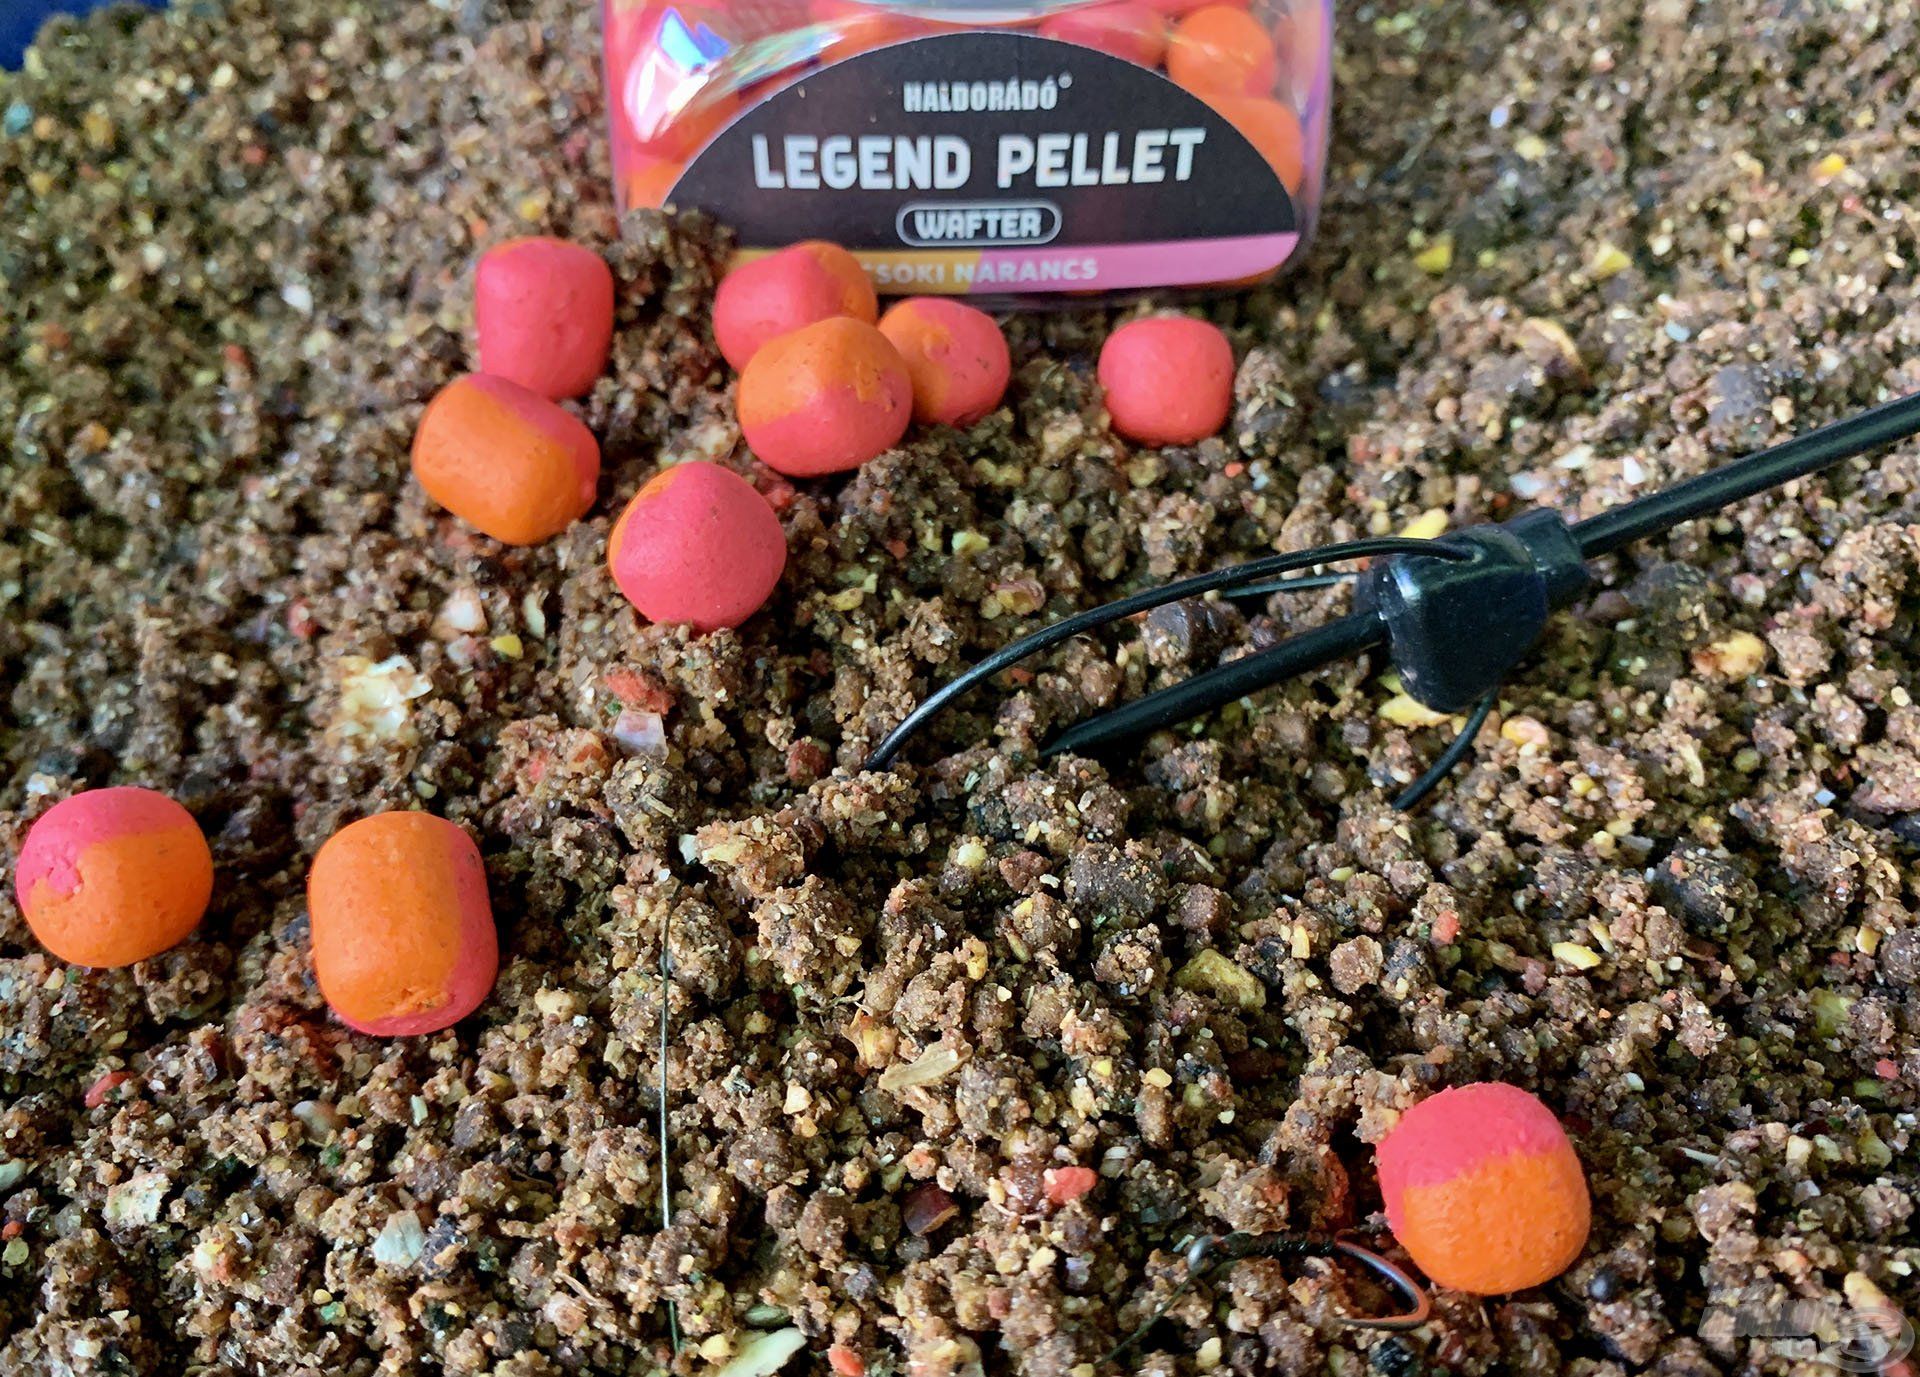 A Legend Pellet Wafter - Csoki Narancs került bele ebbe az összeállításba, amely közkedvelt ízvilágú pontycsali